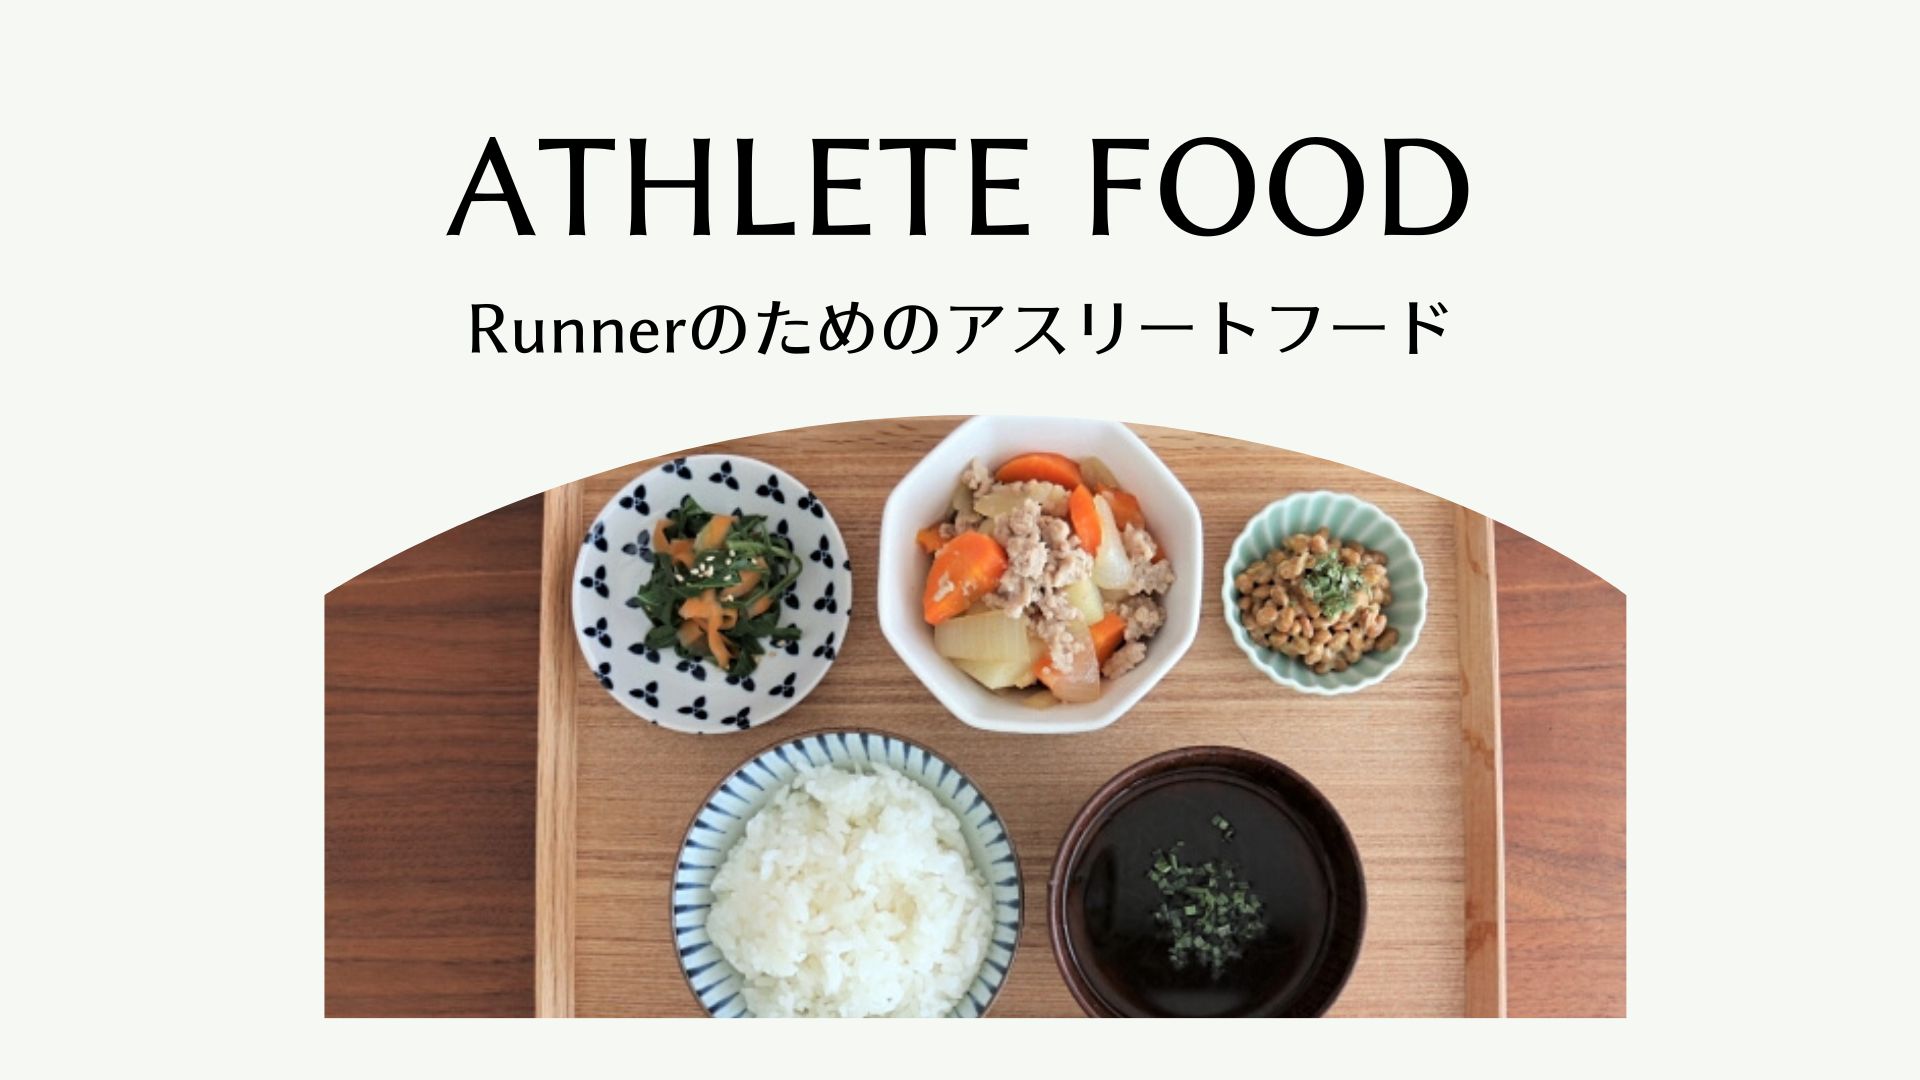 Athlete Food